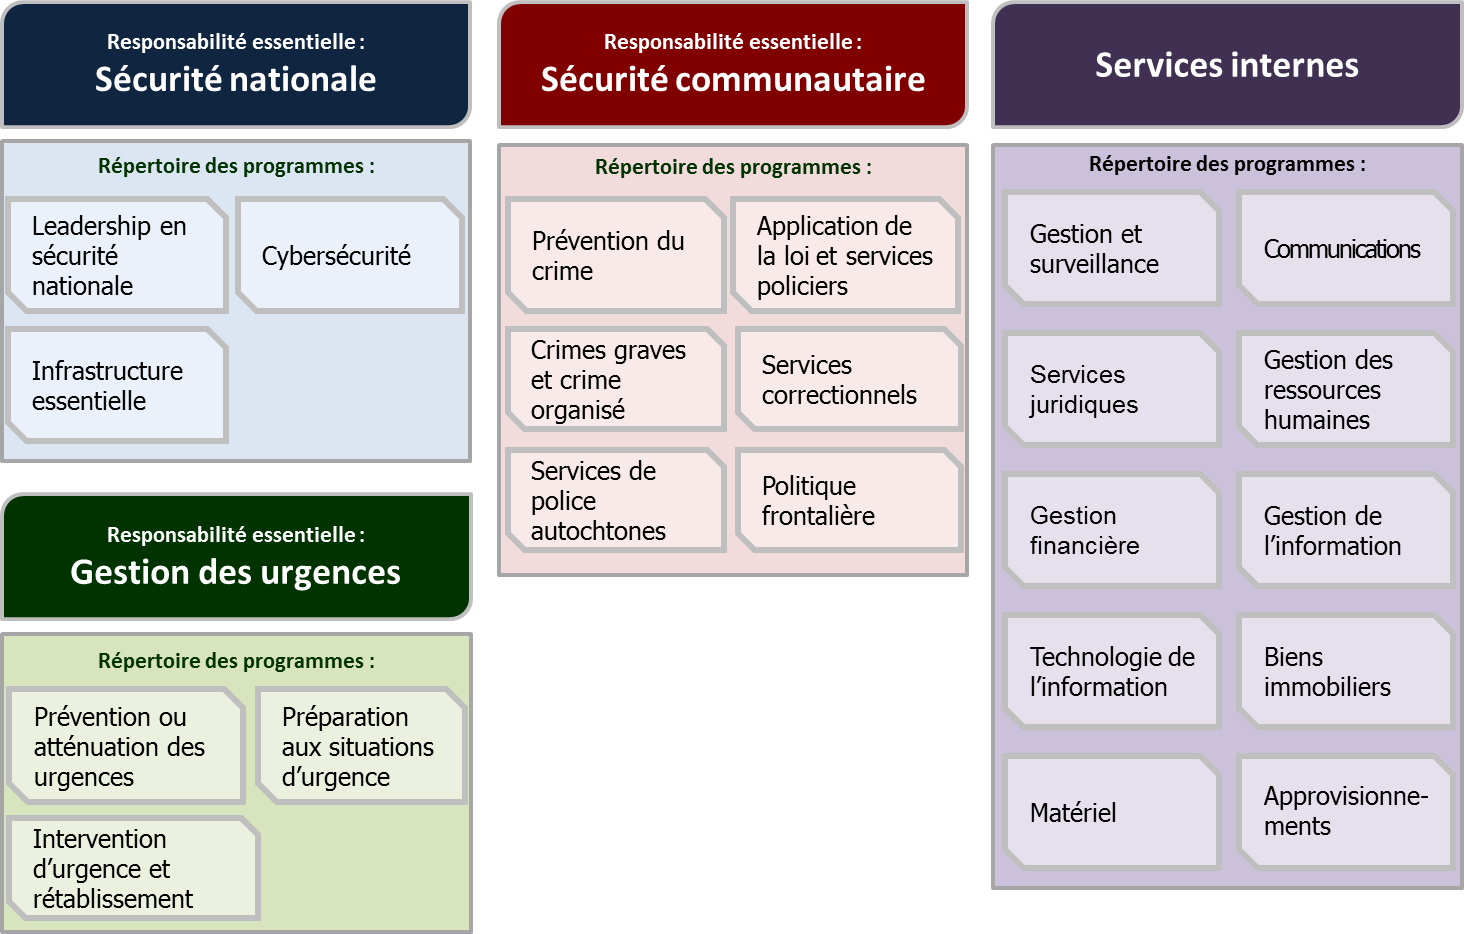  Responsabilités essentielles et répertoire des programmes de Sécurité publique Canada